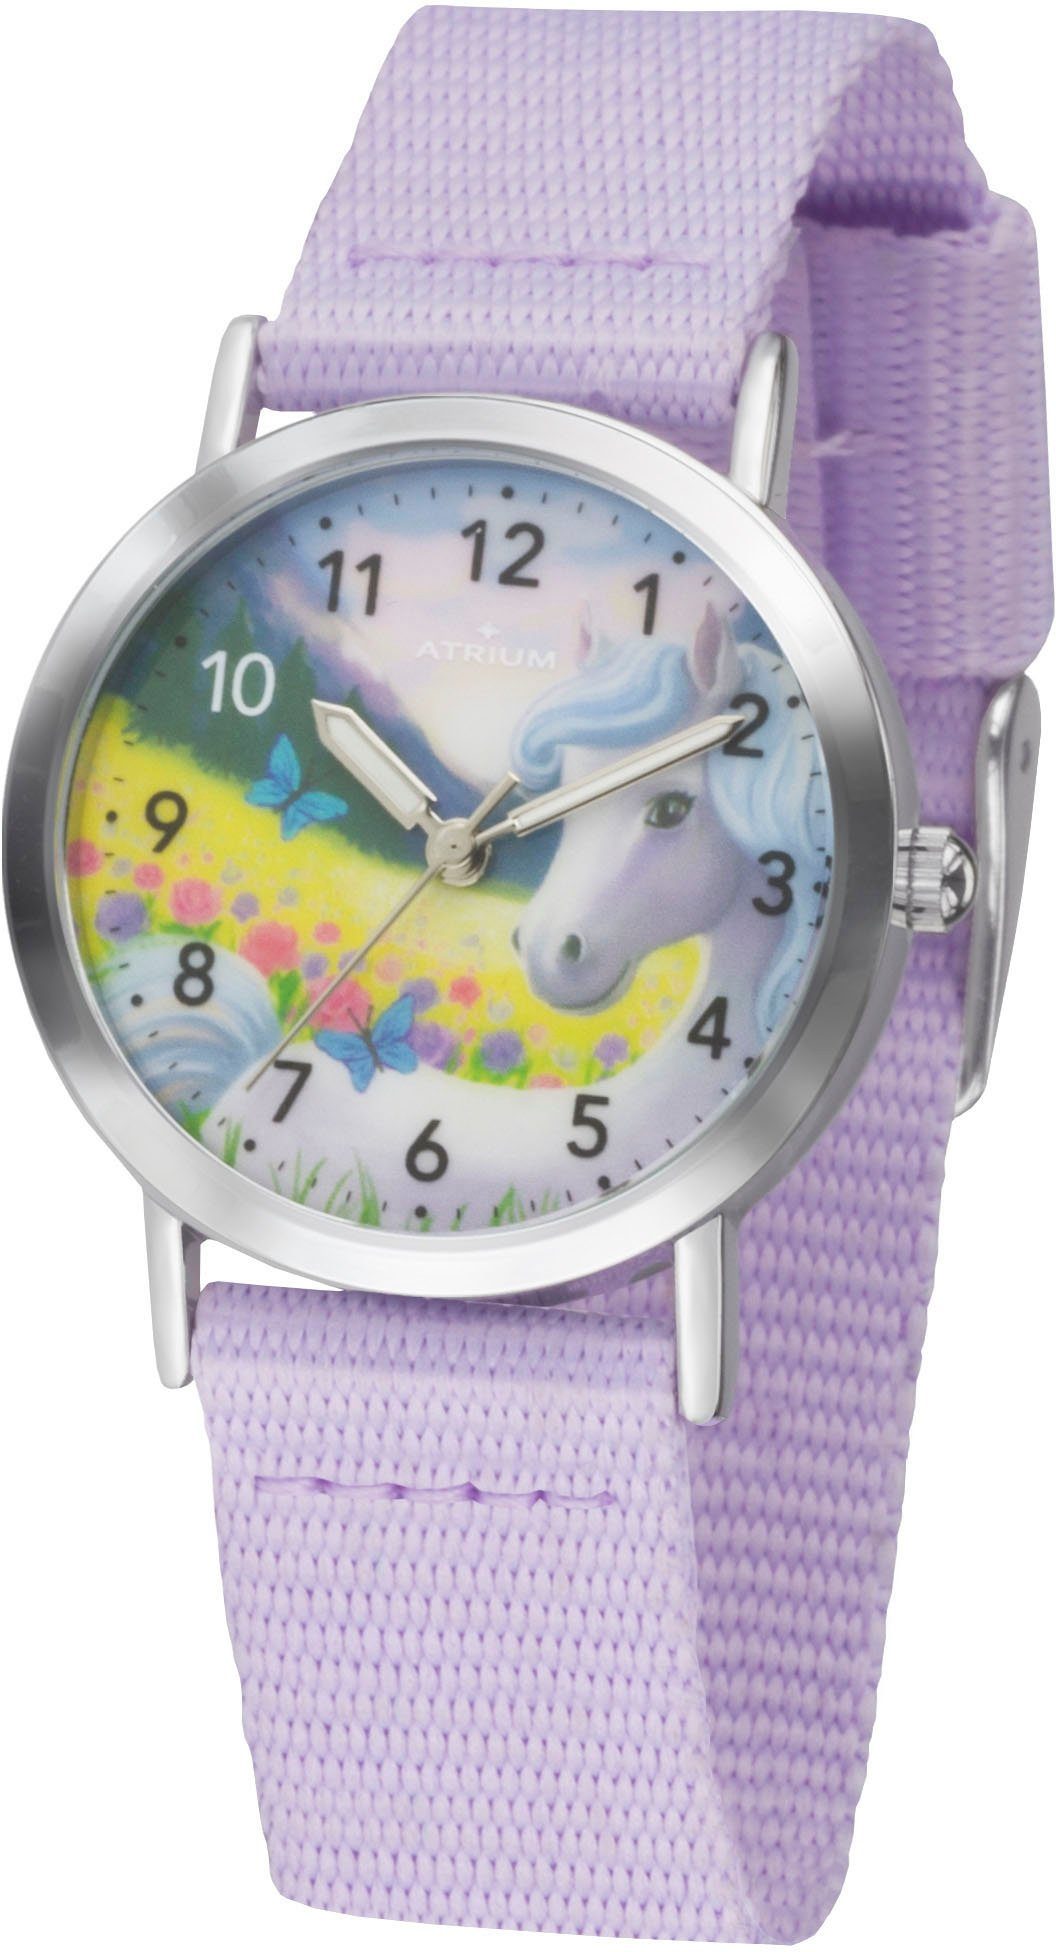 Atrium Quarzuhr A44-18, Armbanduhr, Kinderuhr, Mädchenenuhr, ideal auch als Geschenk